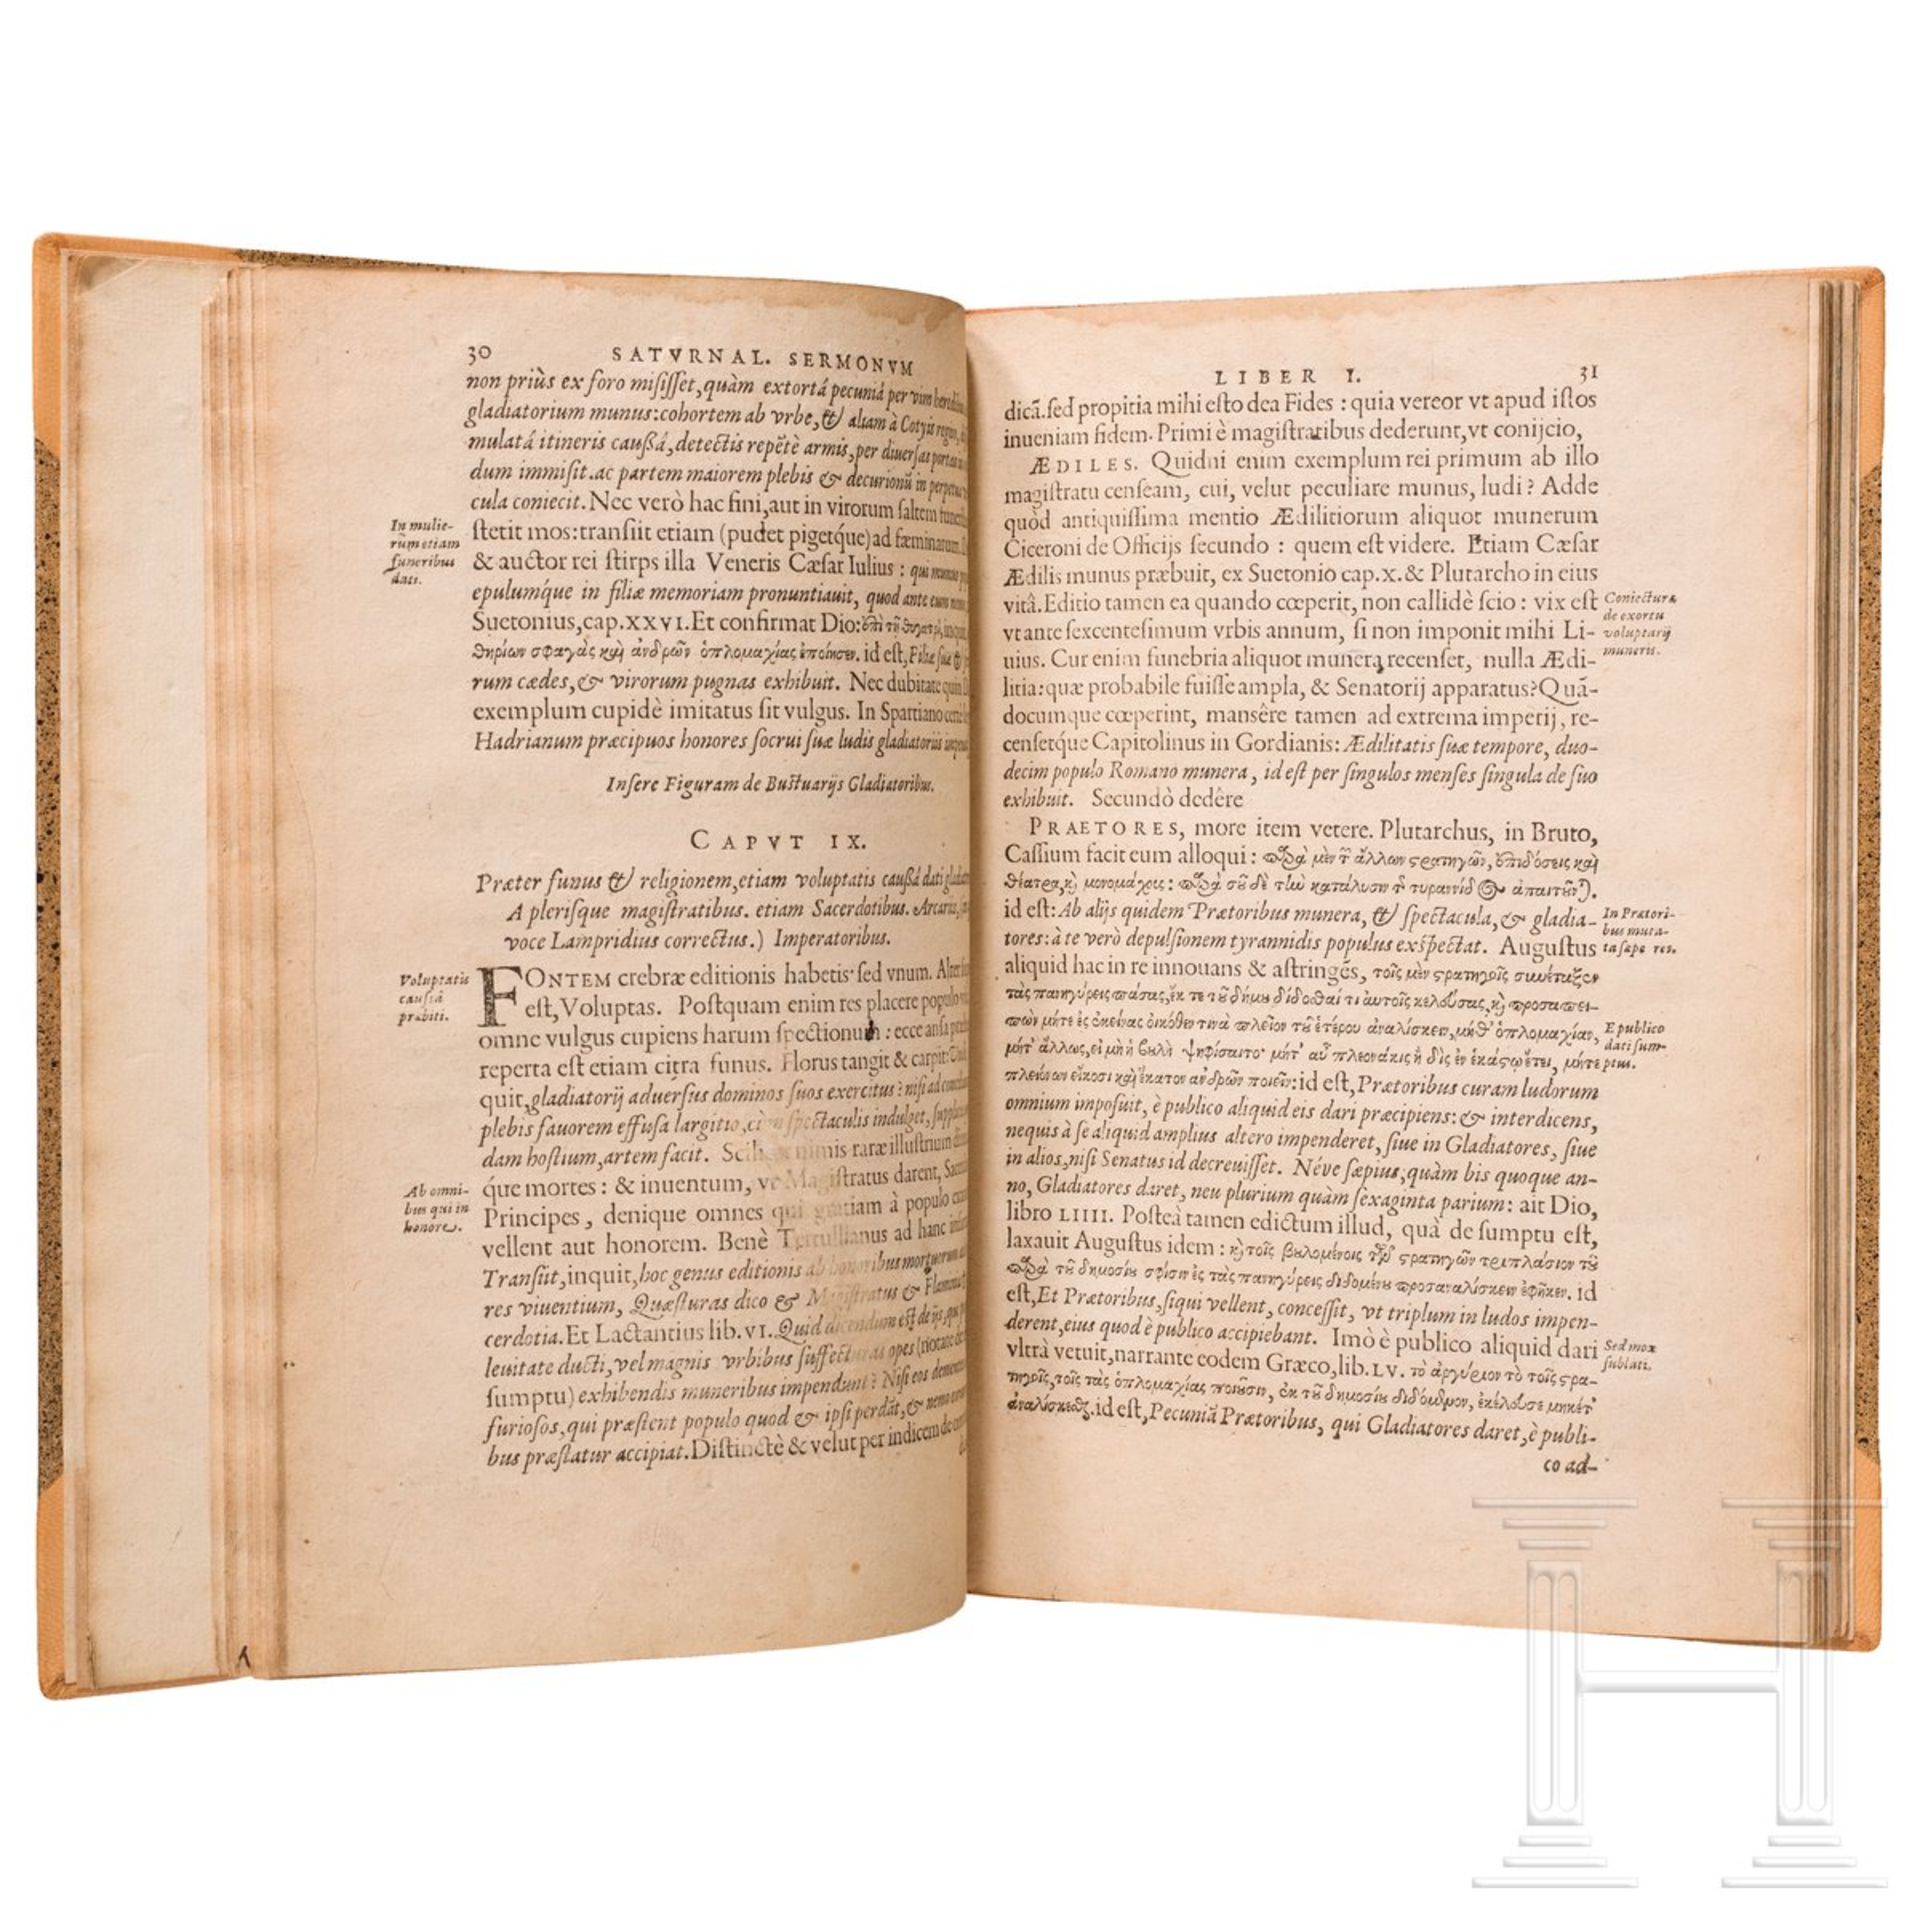 Iustus Lipsius, "Saturnalium Sermonum Libri Duo, Qui de Gladiatoribus", Antwerpen, 1604 - Image 3 of 5